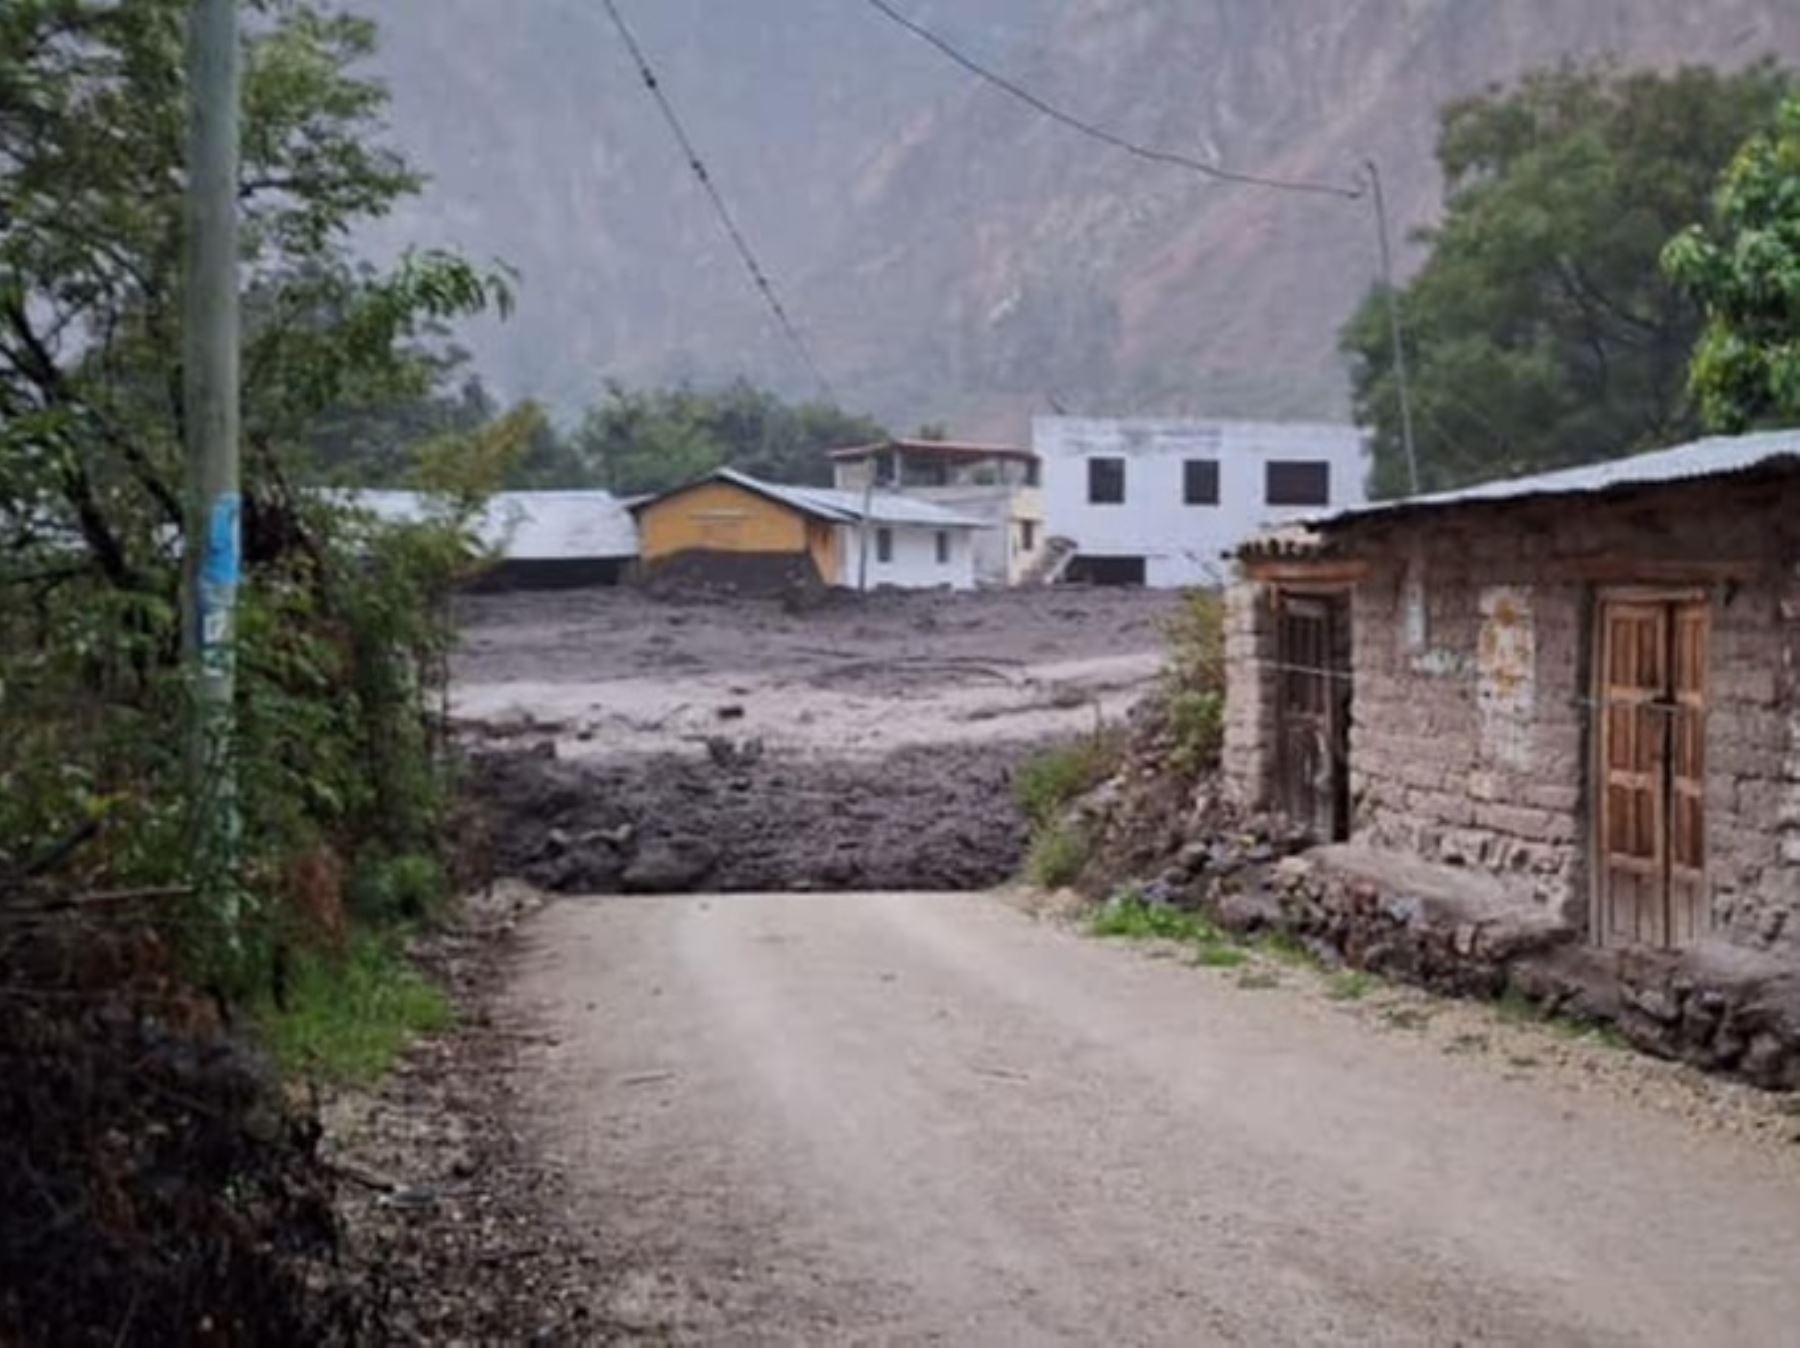 Diversos centros poblados de la provincia de Páucar del Sara Sara, región Ayacucho, se vieron afectados por las lluvias intensas y la caída de un huaico de grandes proporciones.